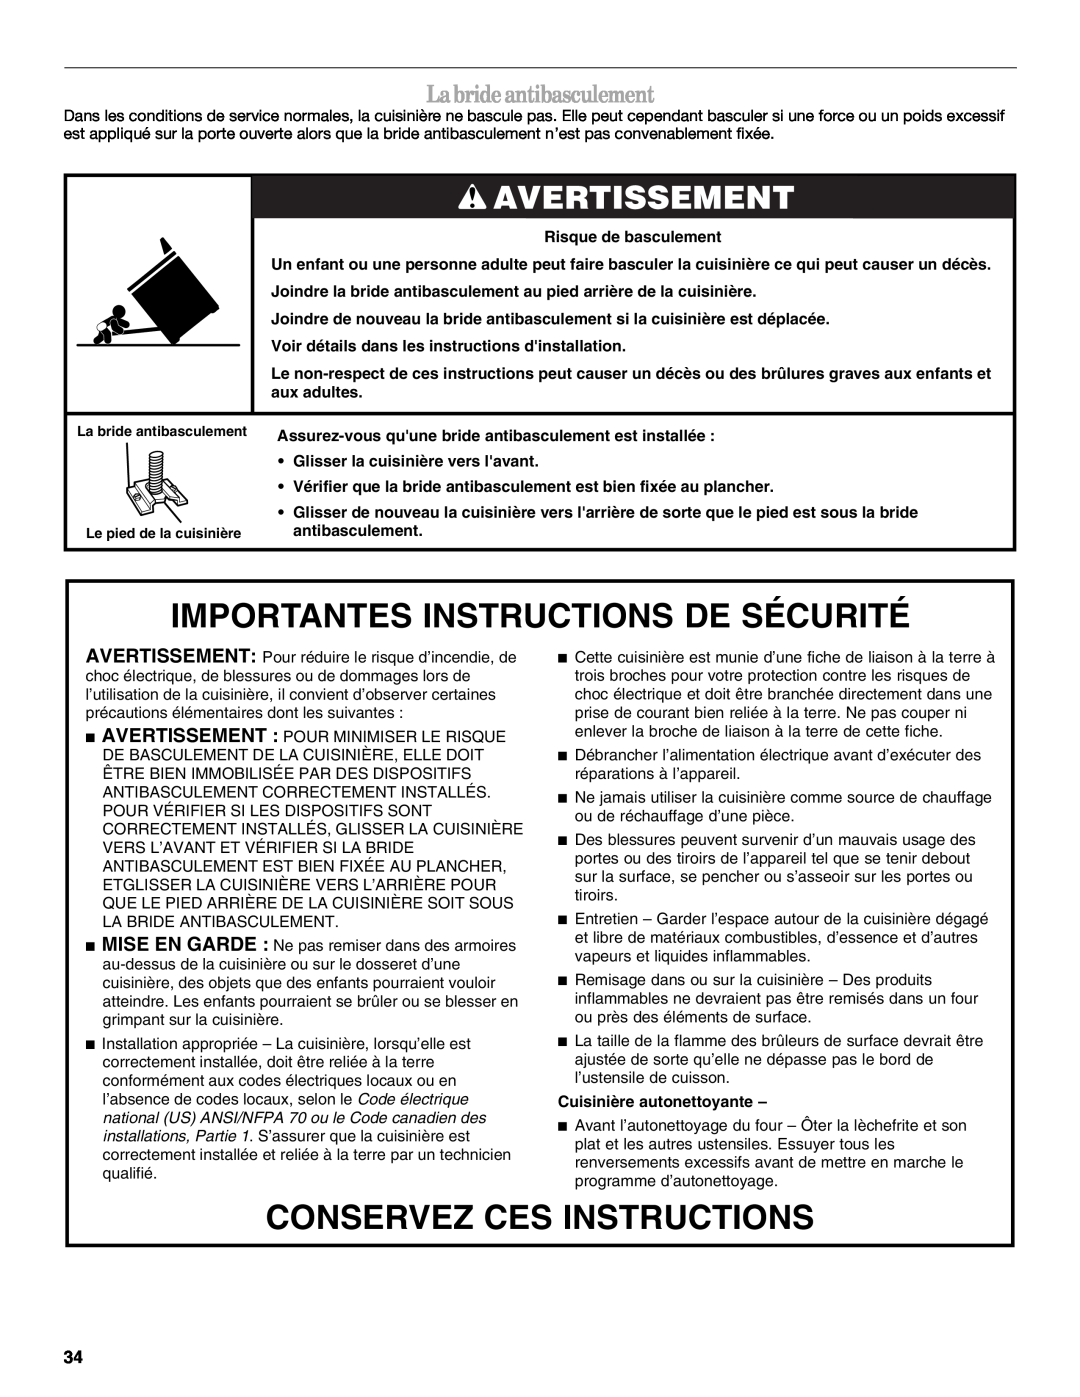 Whirlpool SF315PEPB3 manual Importantes Instructions De Sécurité, Conservez Ces Instructions, Avertissement 